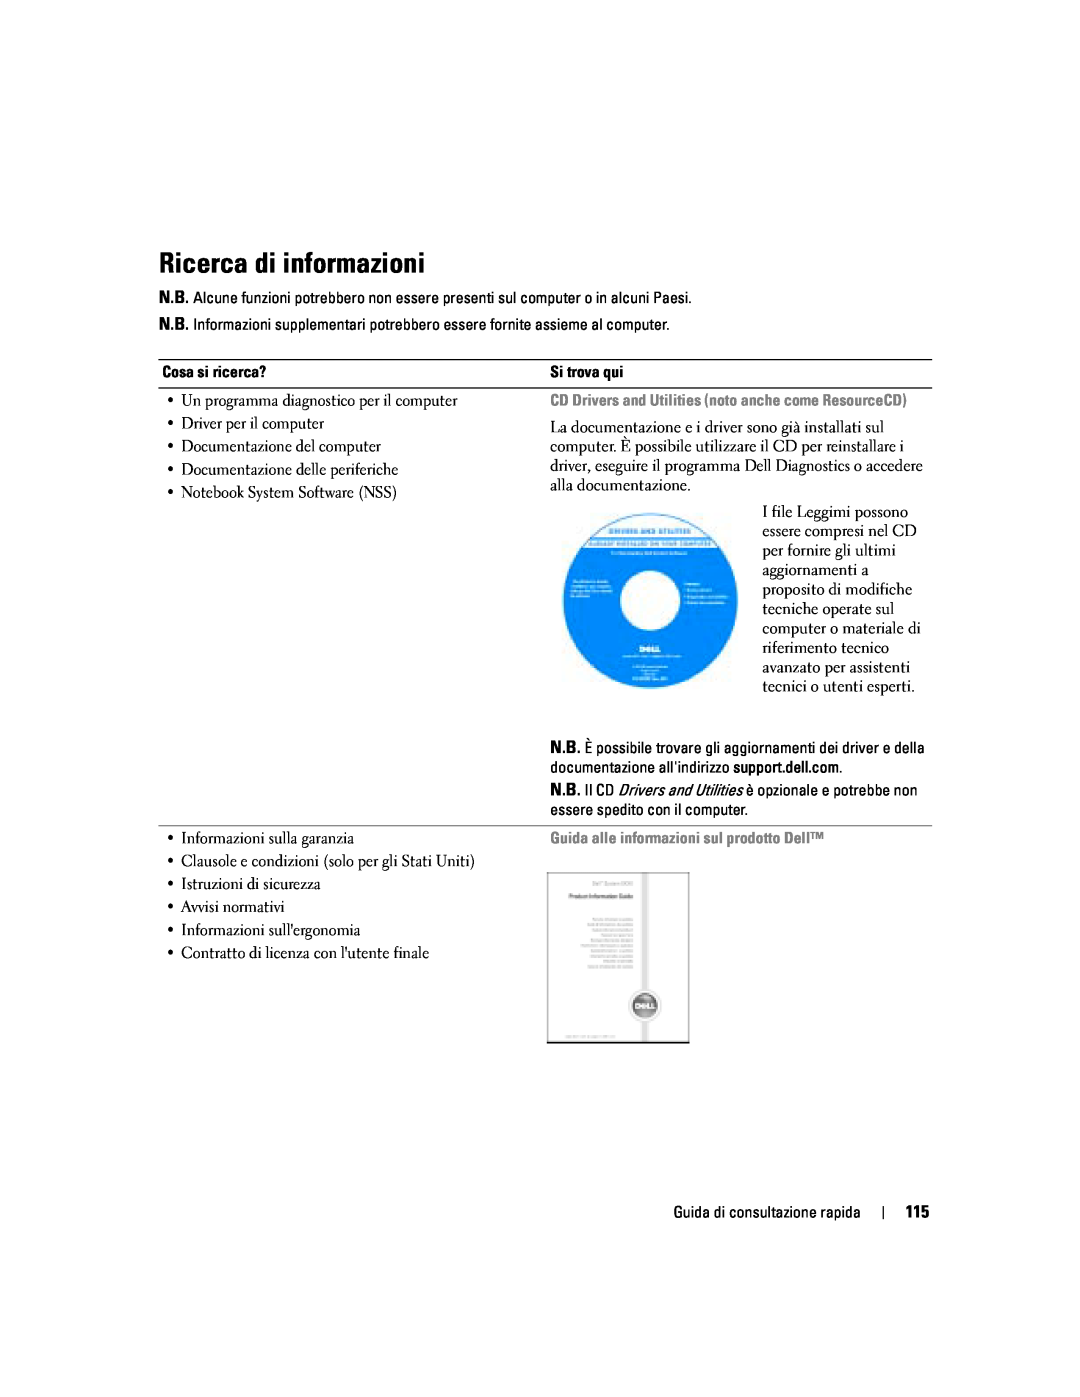 Dell PP06S manual Ricerca di informazioni, Guida alle informazioni sul prodotto Dell 